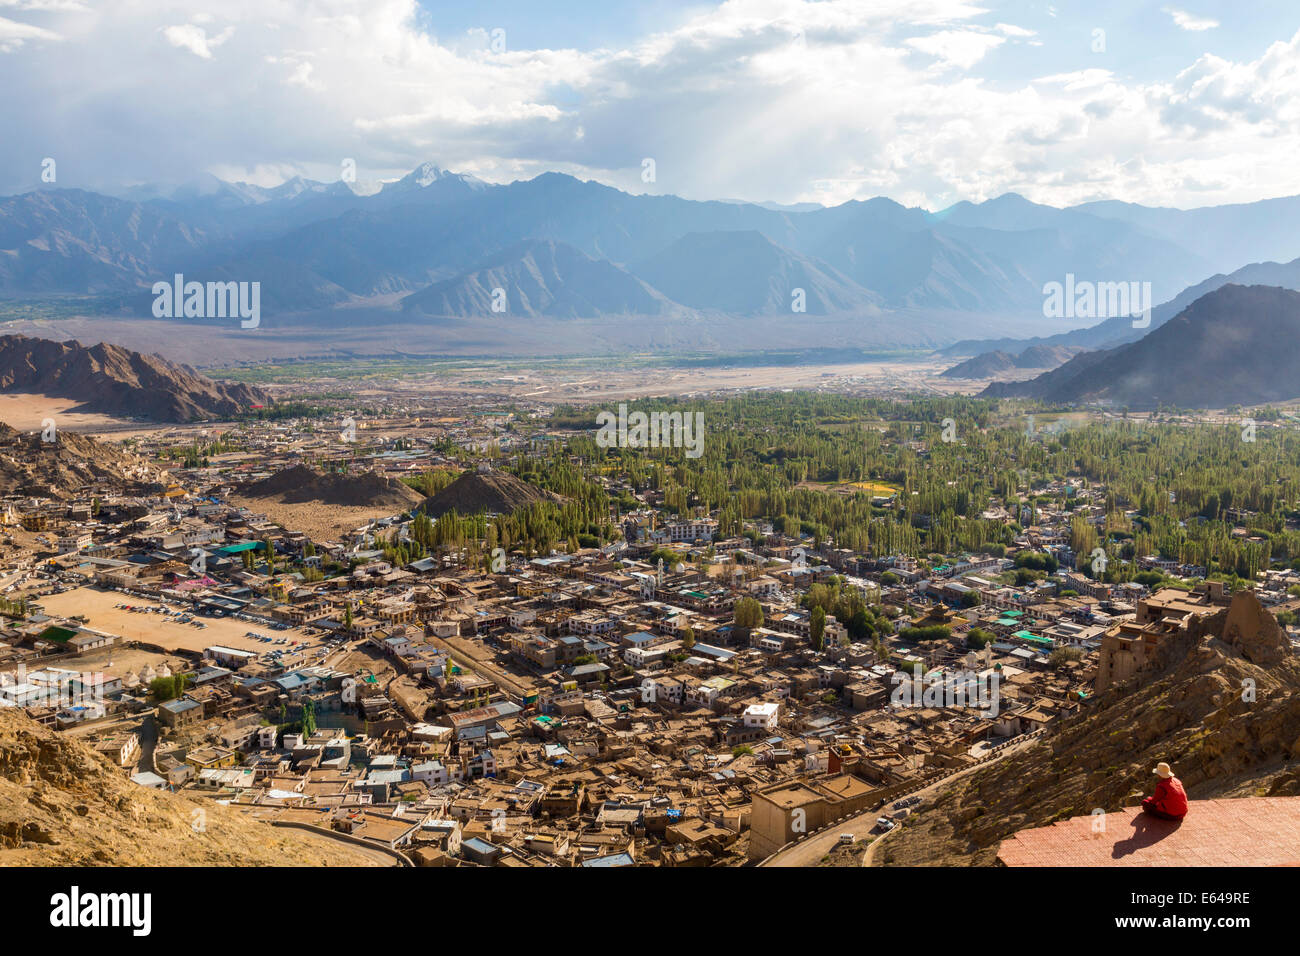 View over Leh, Ladakh, India Stock Photo